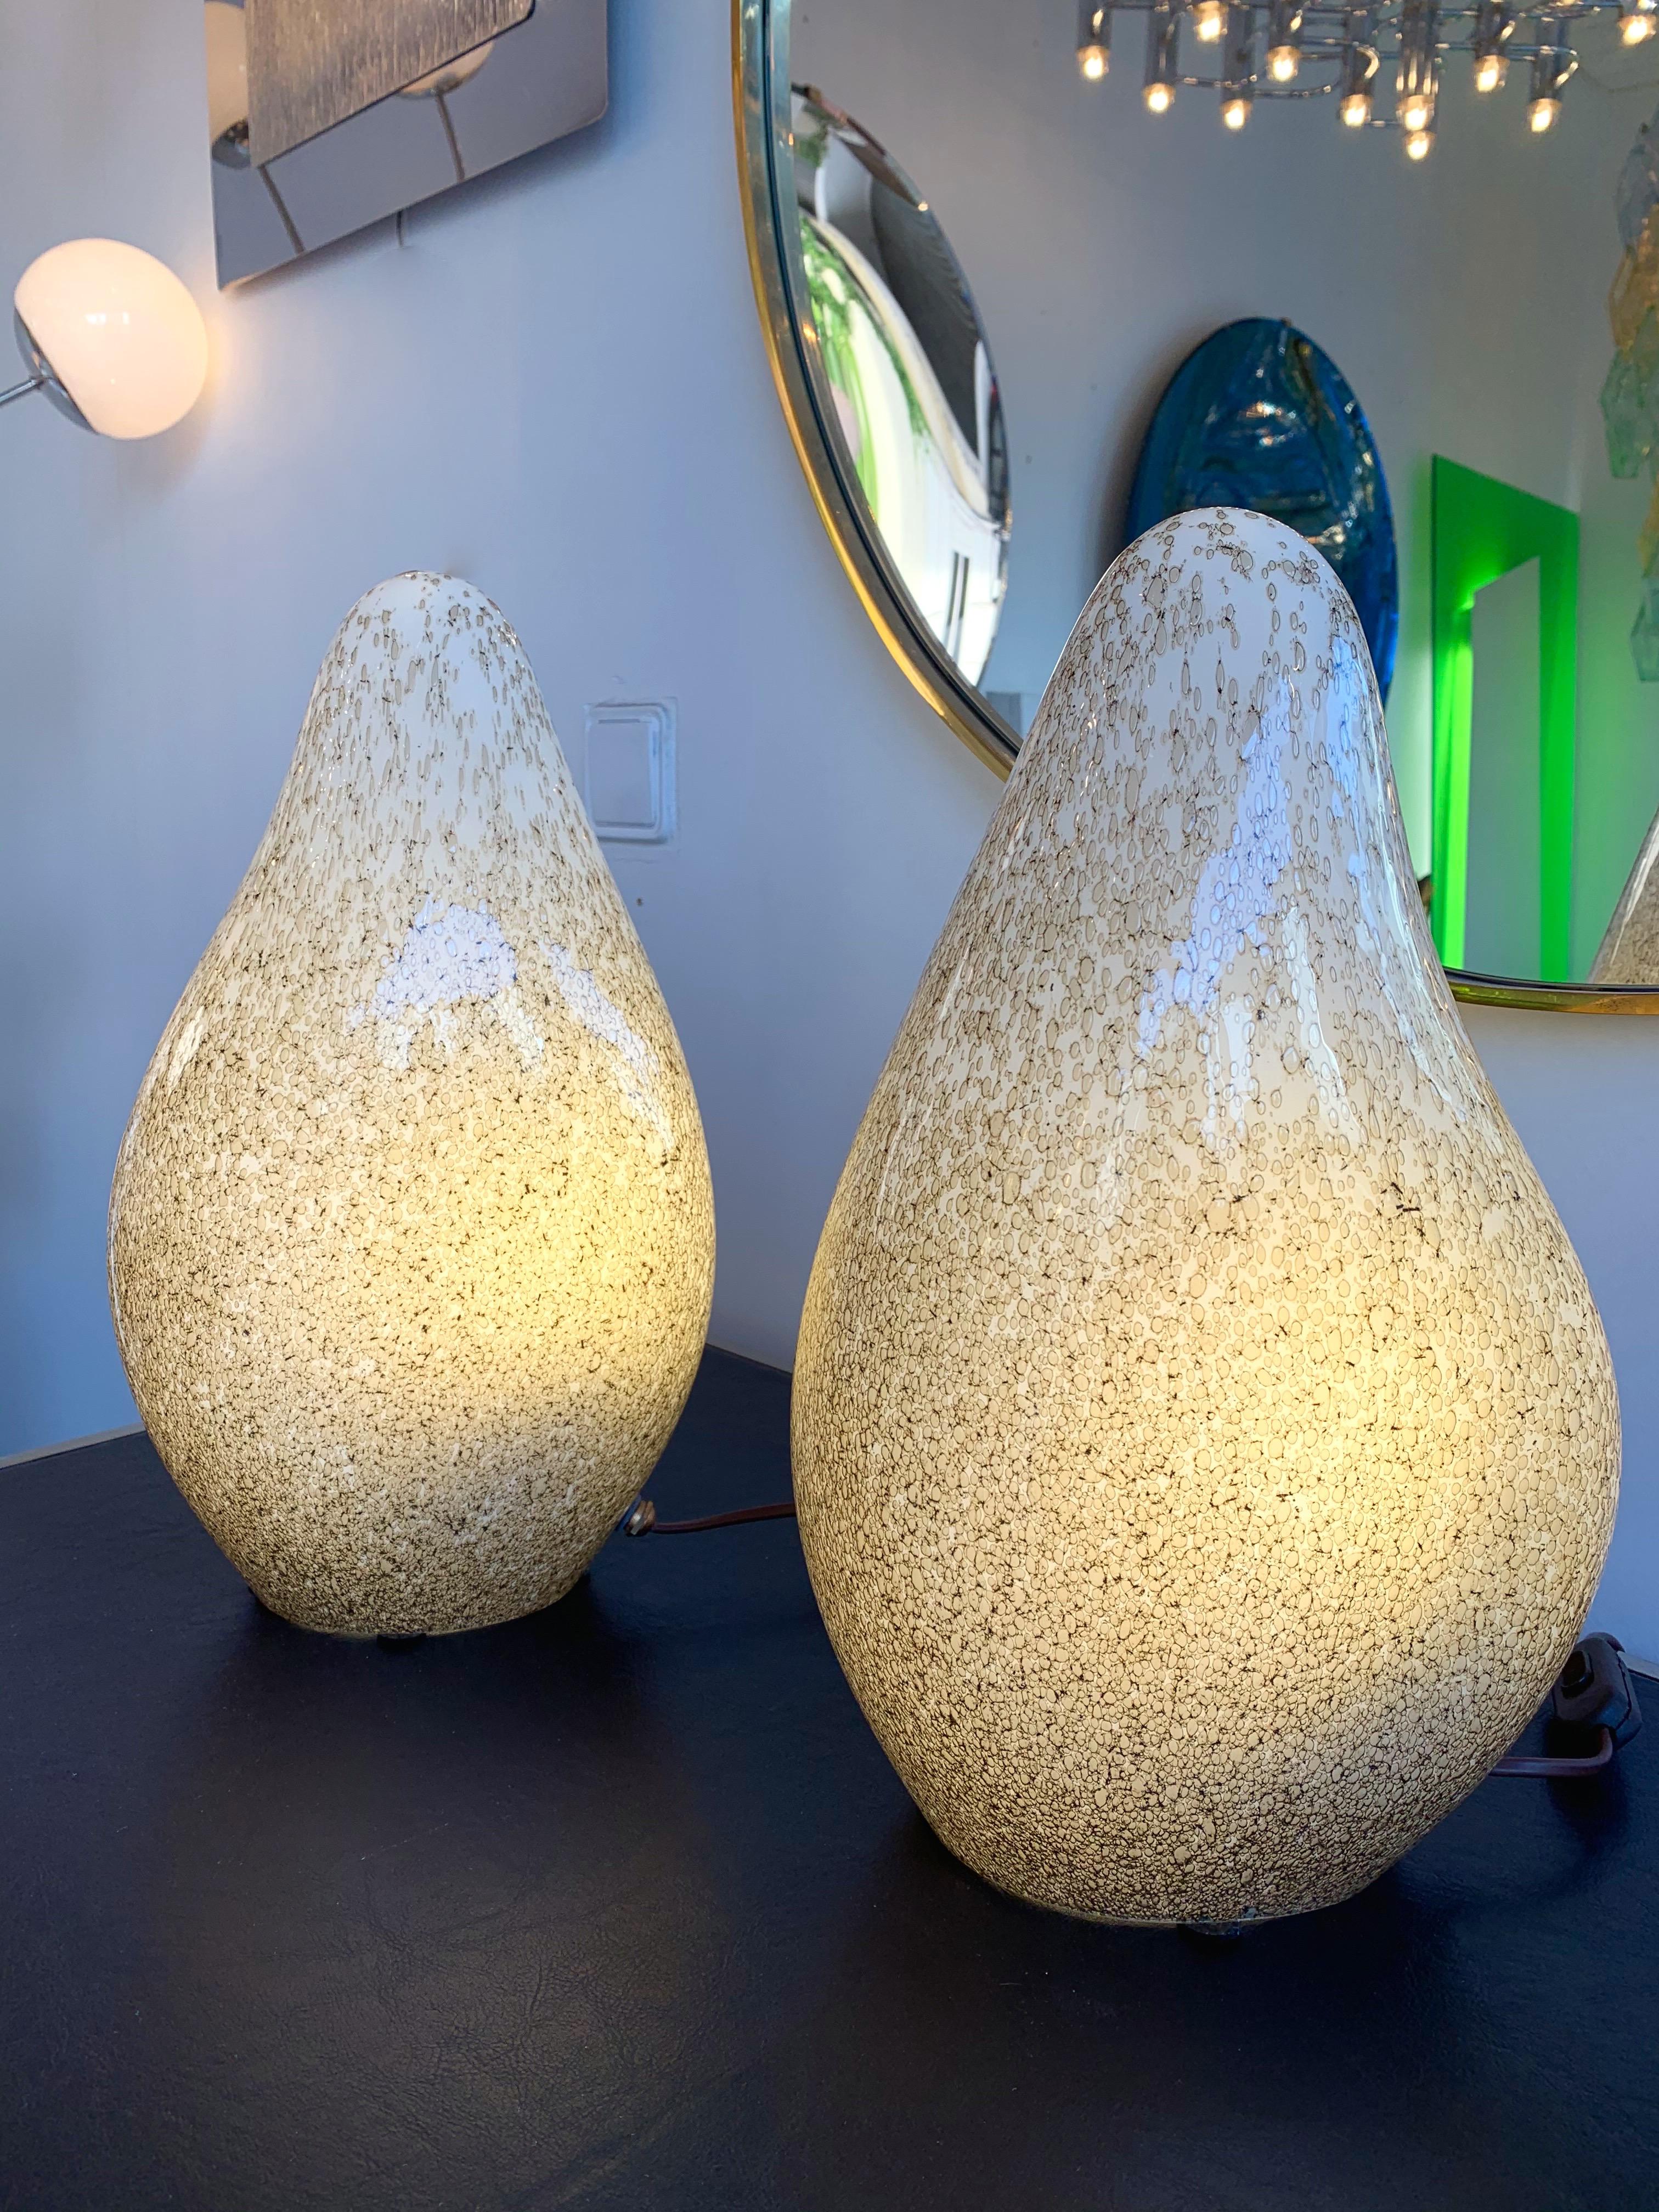 Pair of organic blown glass lamps by La Murrina Murano, tipical bubble glass from the manufacture. Famous design like Mazzega, Aldo Carlo Nason, Venini, Vistosi.